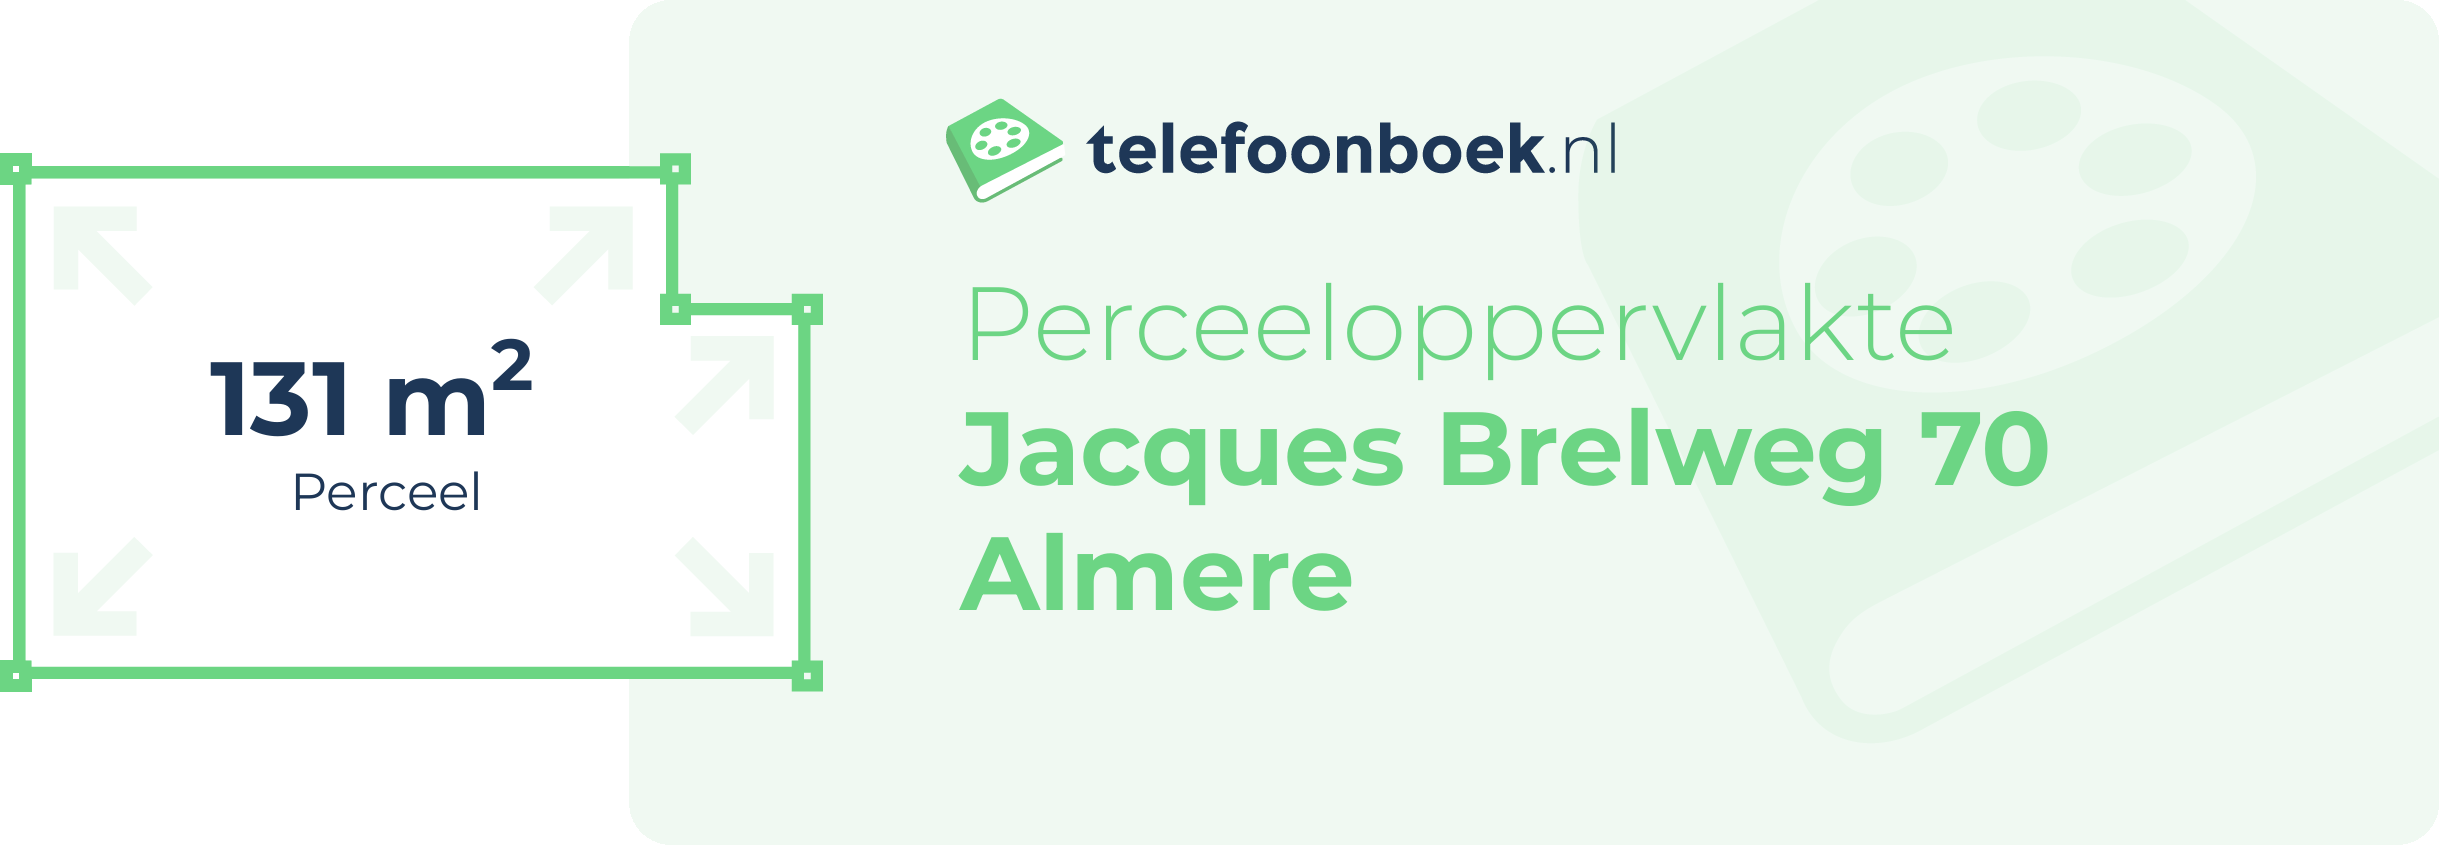 Perceeloppervlakte Jacques Brelweg 70 Almere